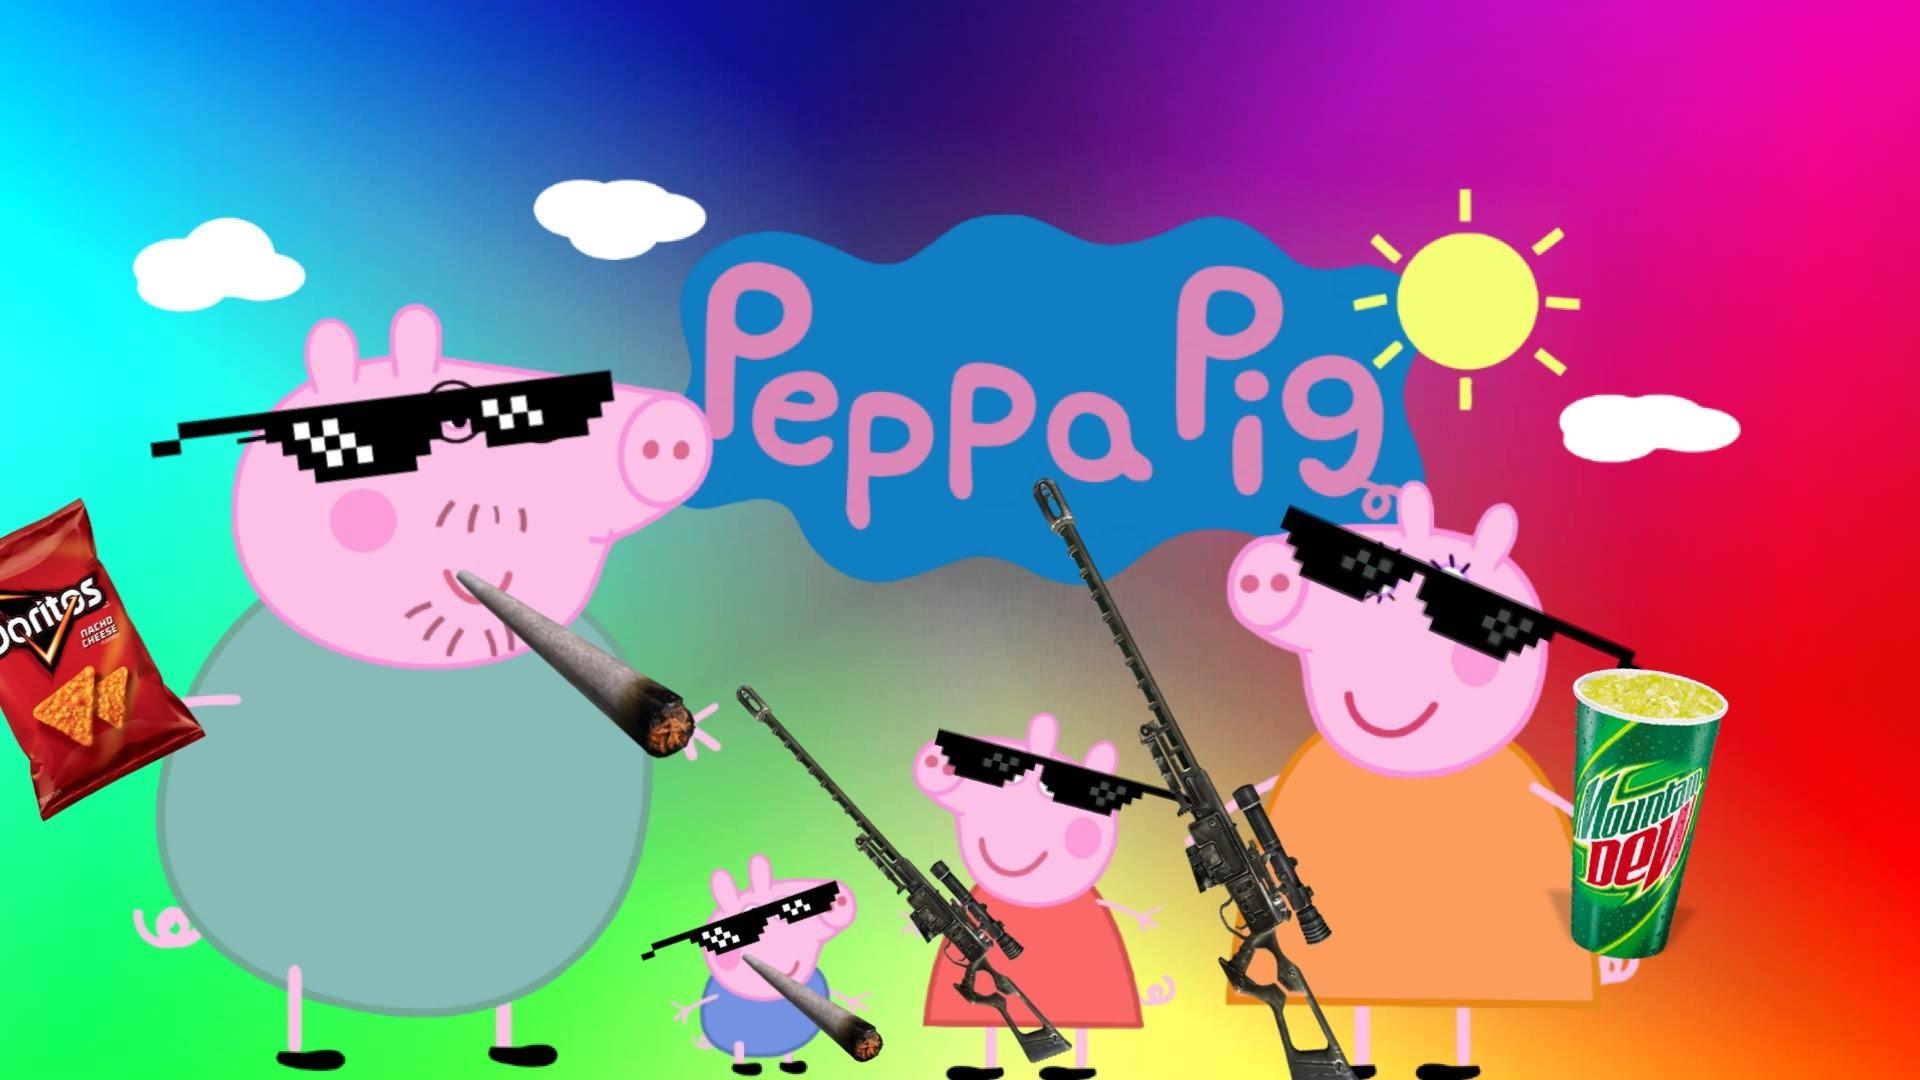 Peppa Pig Meme Wallpapers Wallpaper Cave